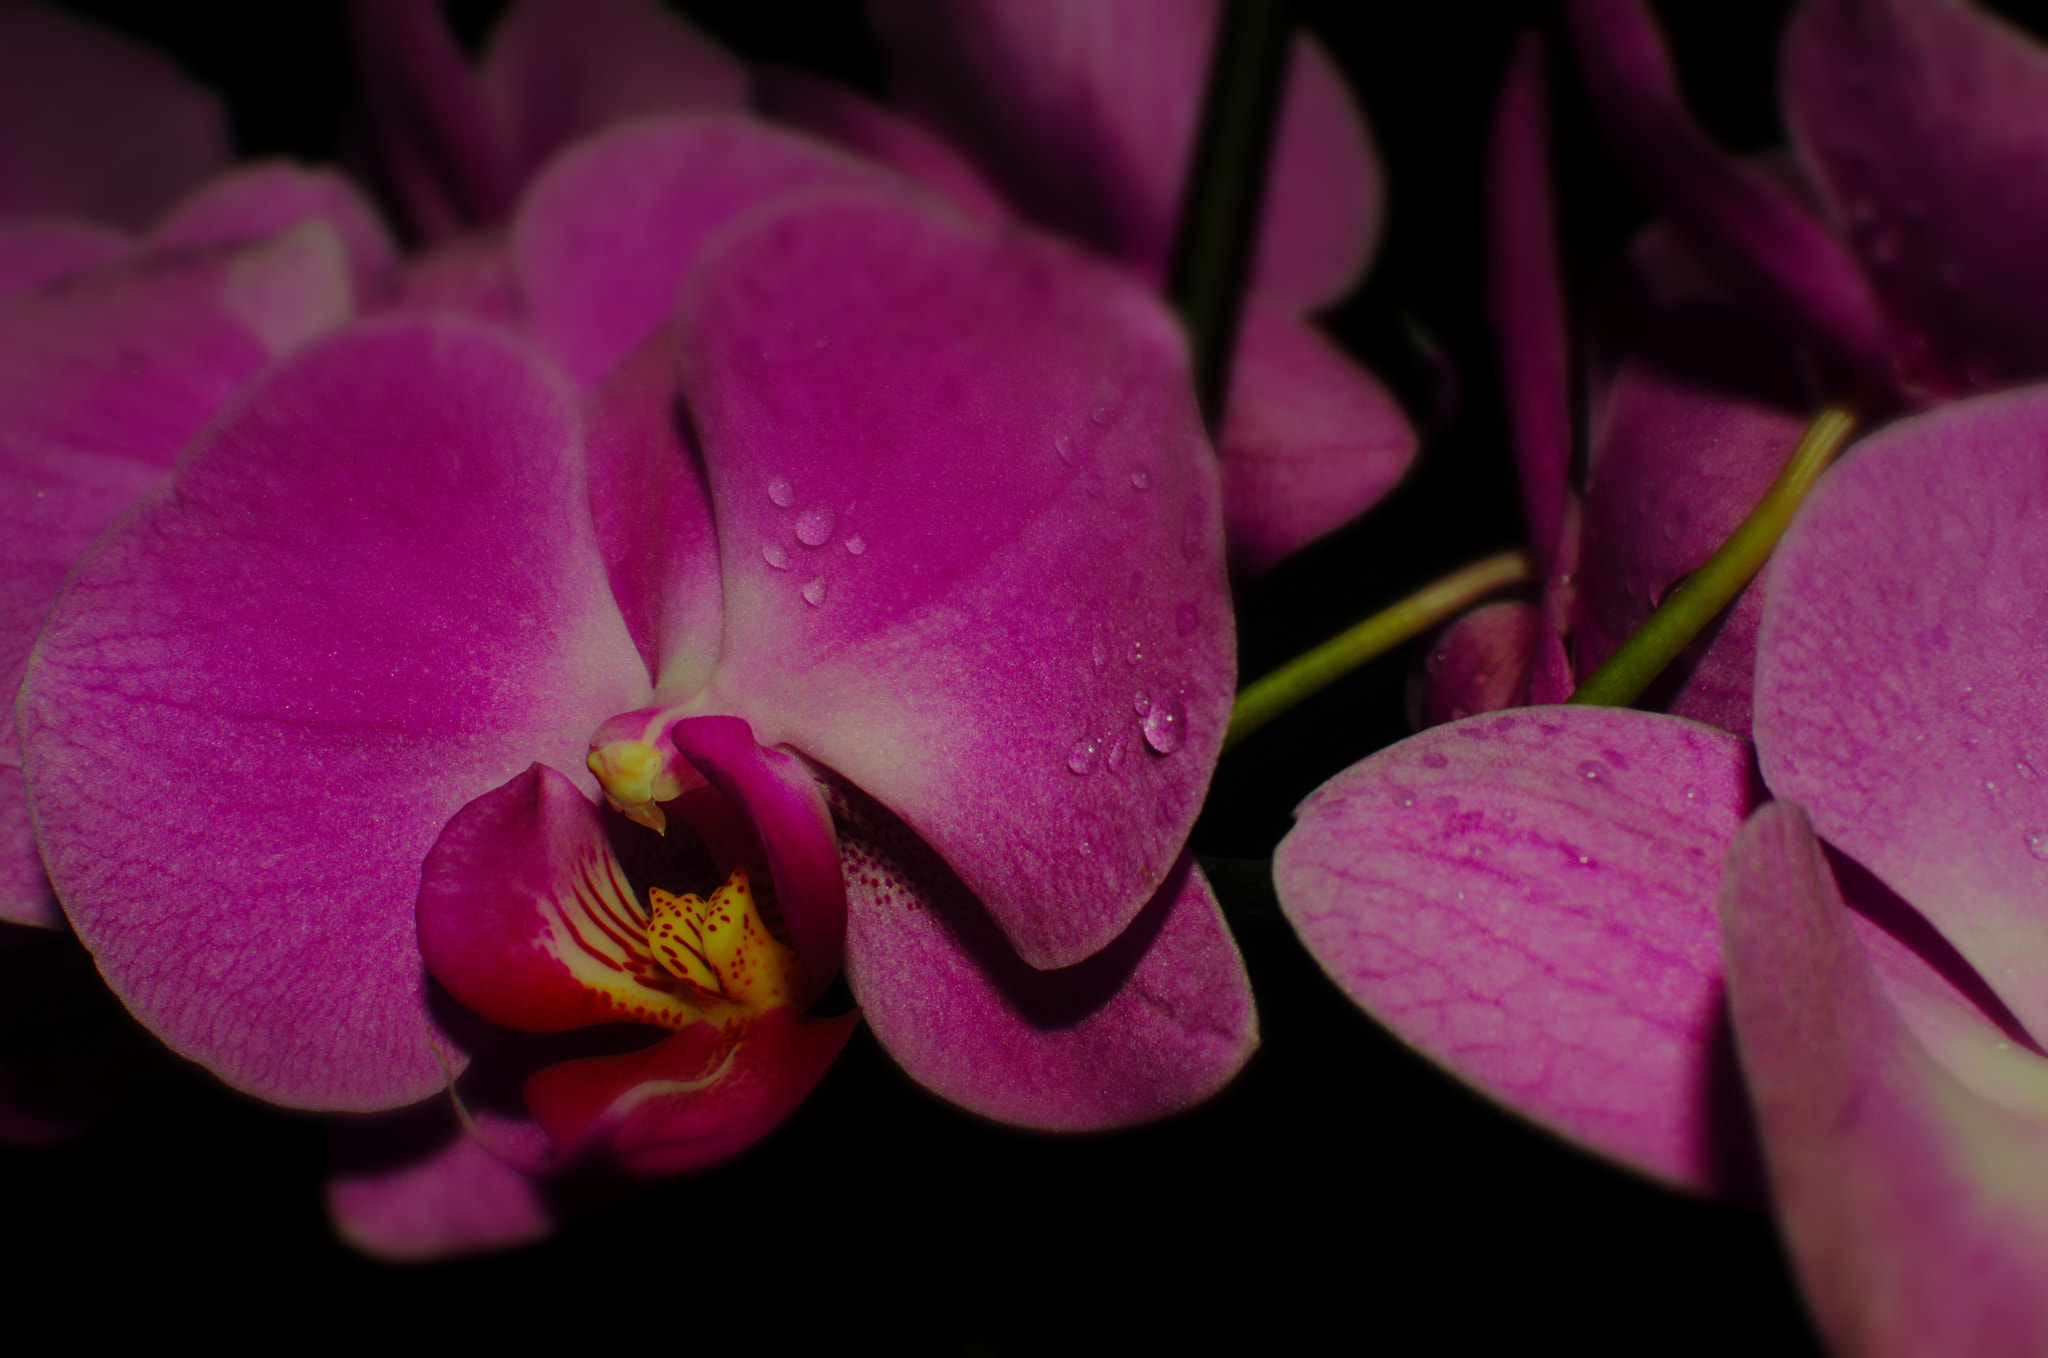 Nikon D7000 + AF-S Nikkor 35mm f/1.8G sample photo. Orchid photography